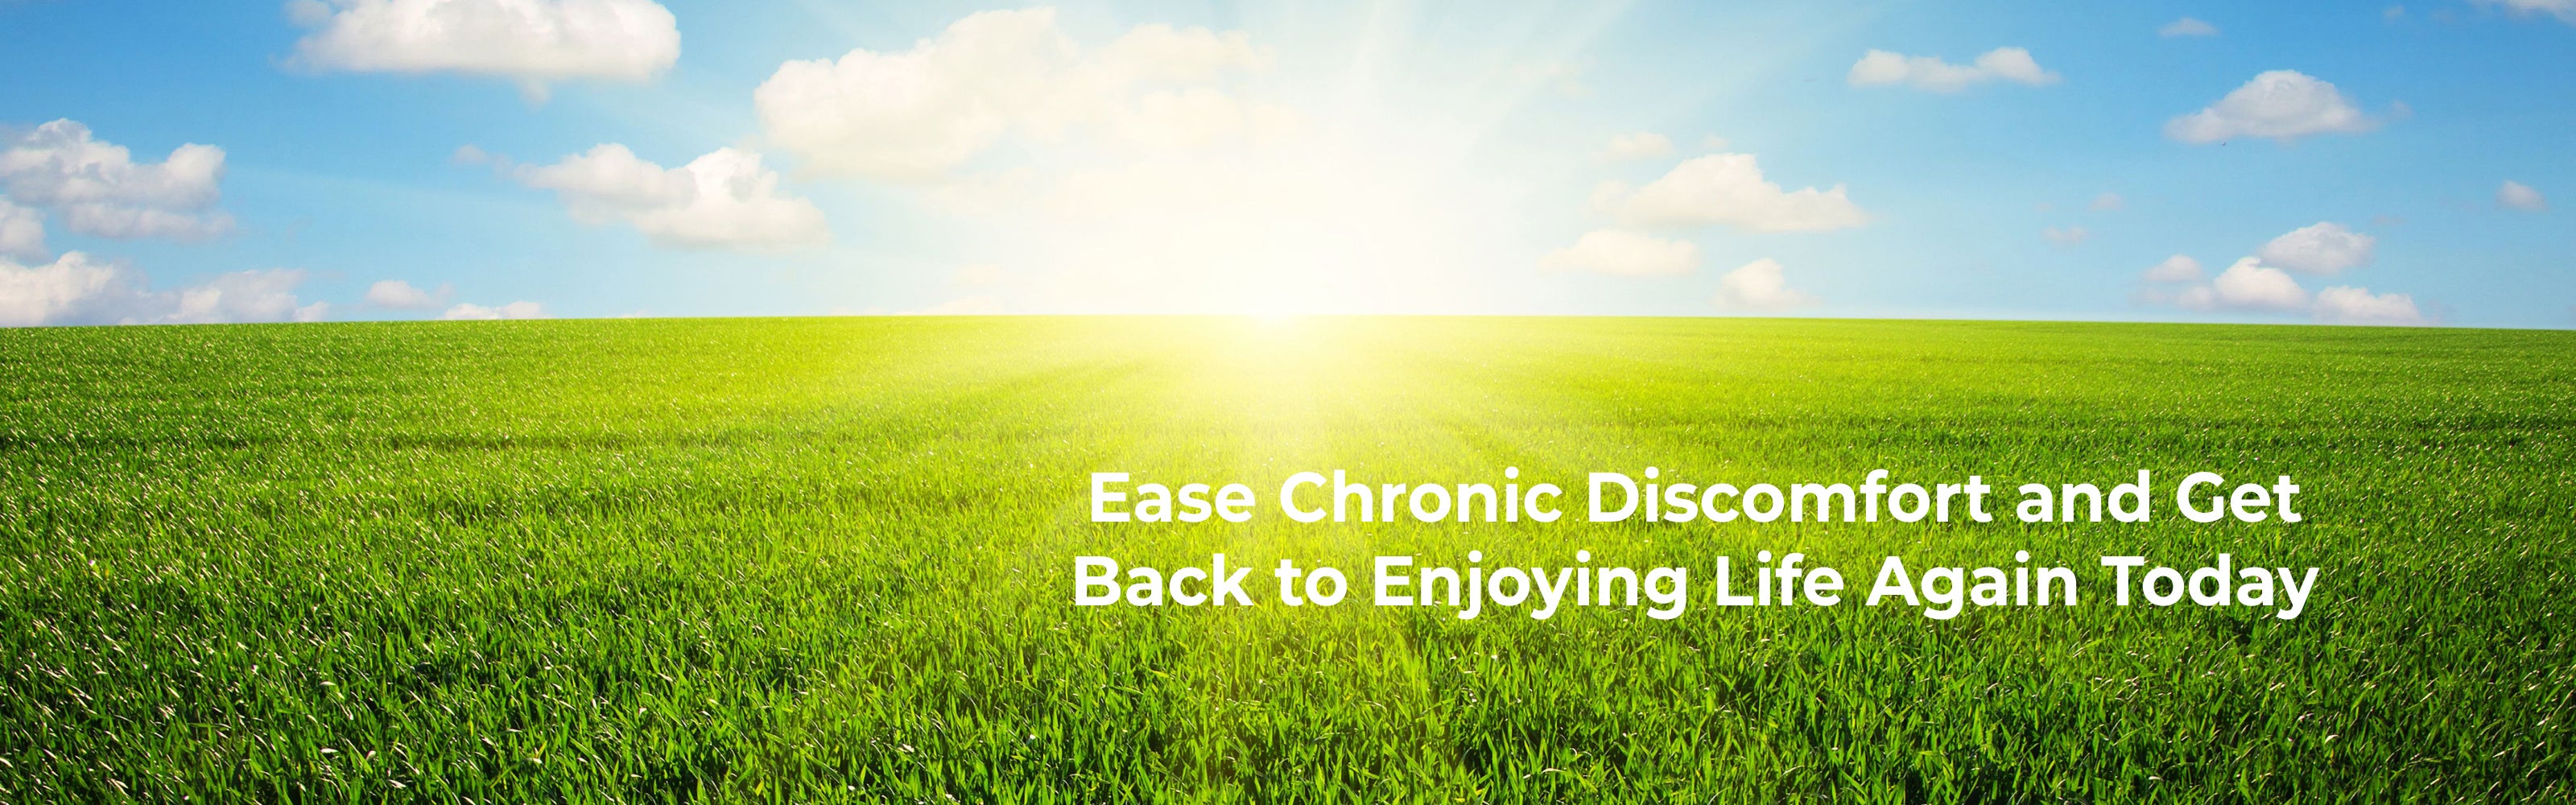 ease chronic discomfort